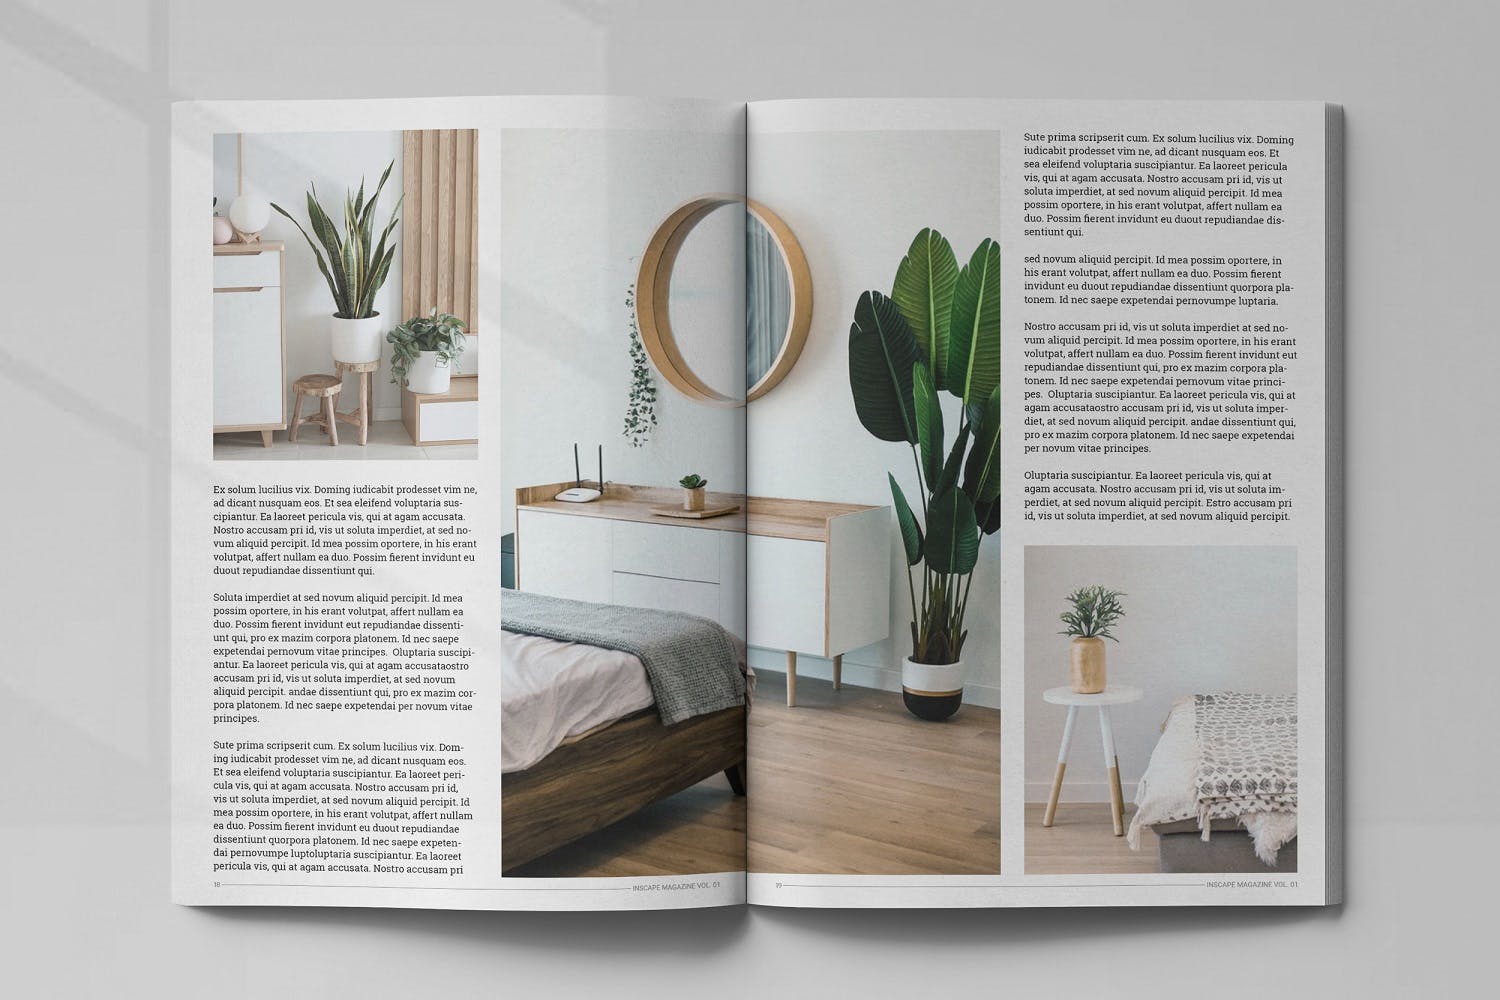 室内设计主题素材库精选杂志排版设计模板 Inscape Interior Magazine插图(9)